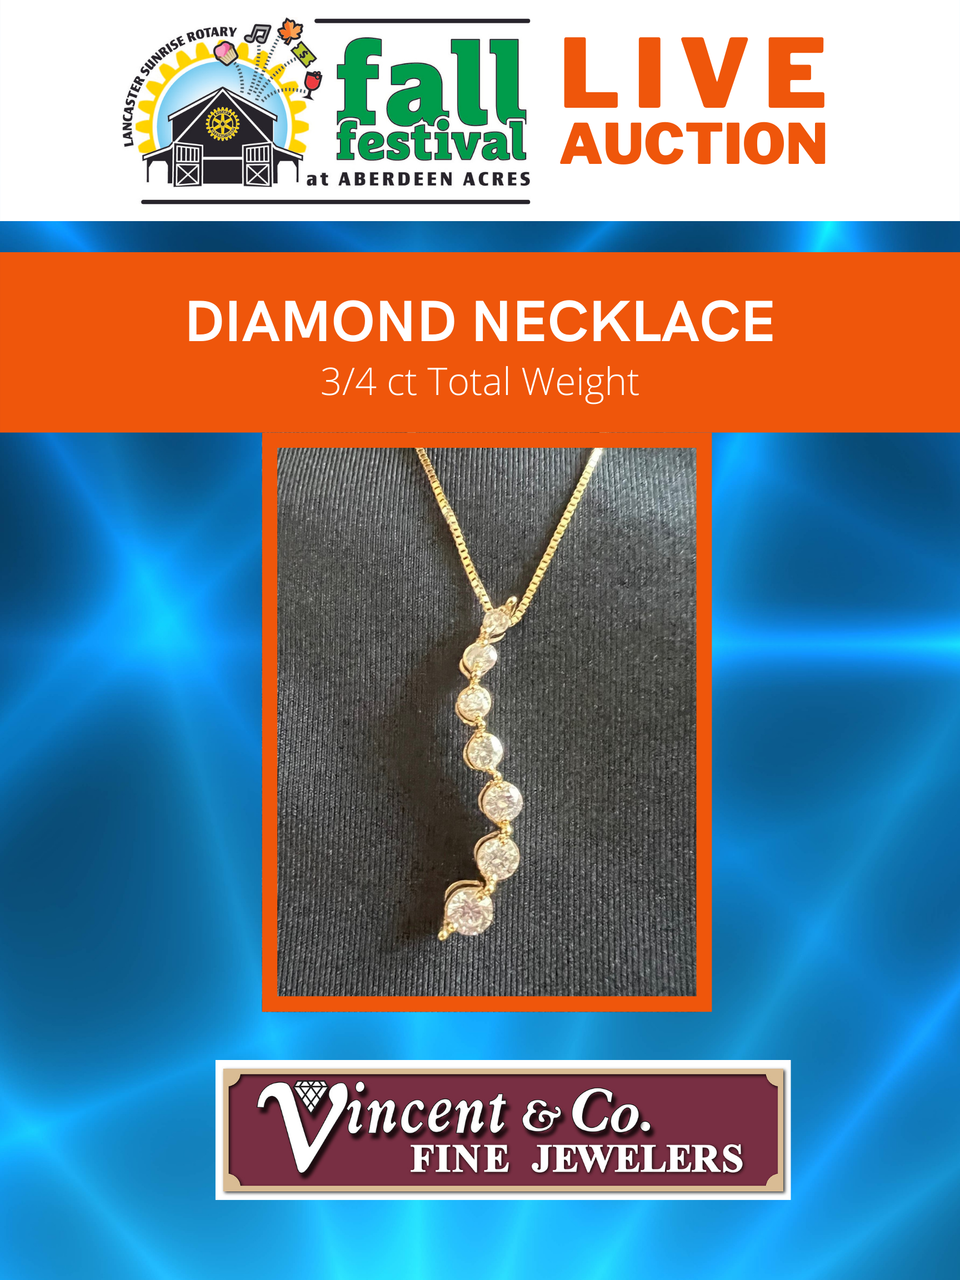 Live auction diamond necklace 18x24